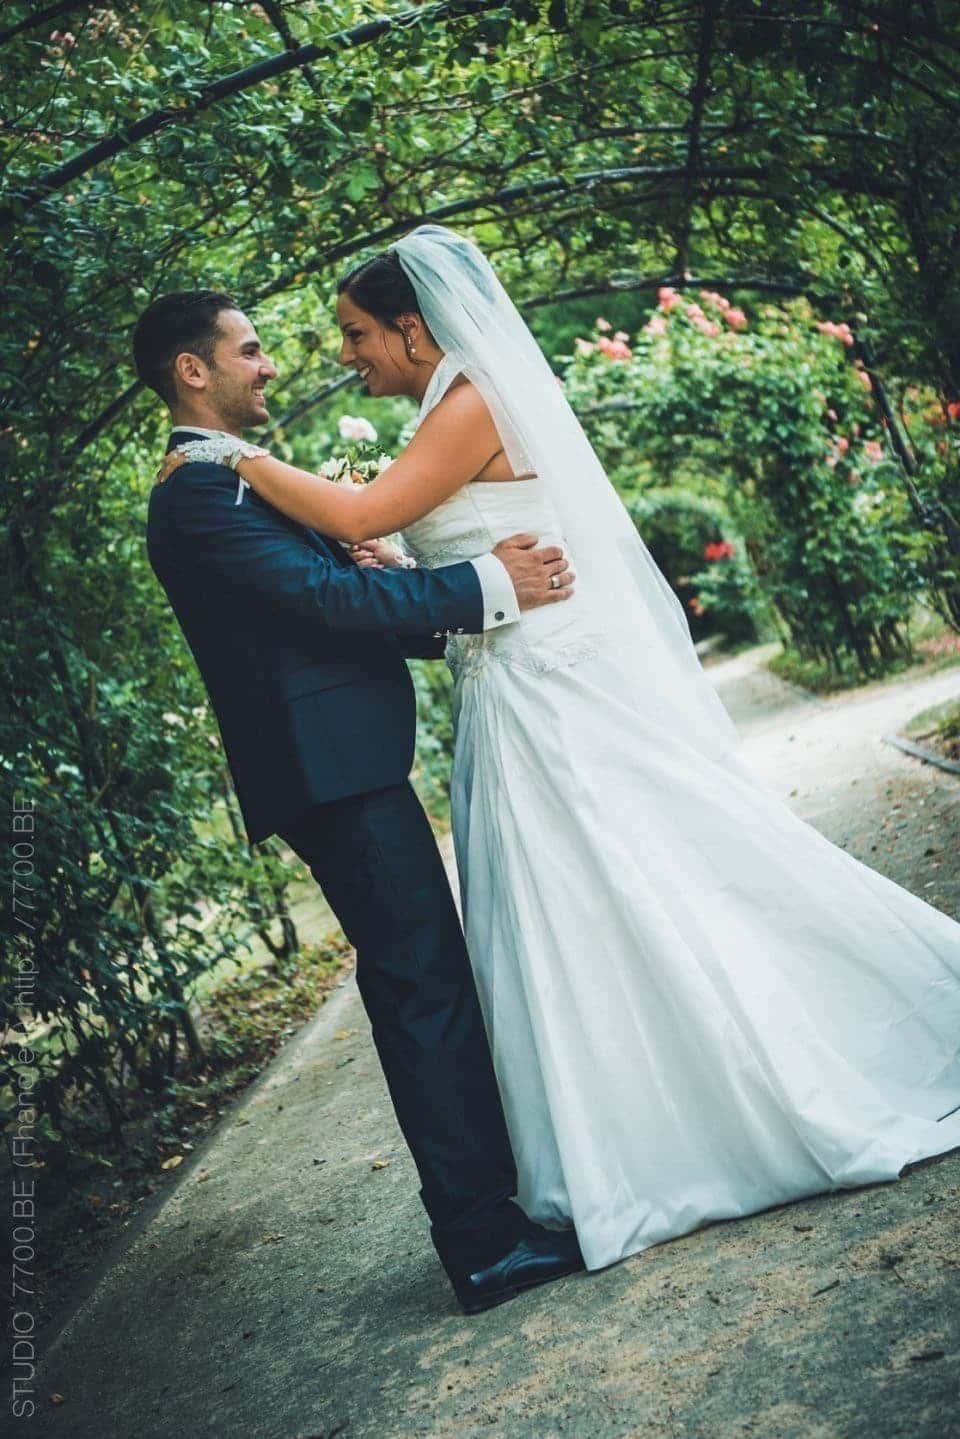 Superbe mariage d'un couple italien réalisé par le STUDIO 7700.BE le 24 juin 2017